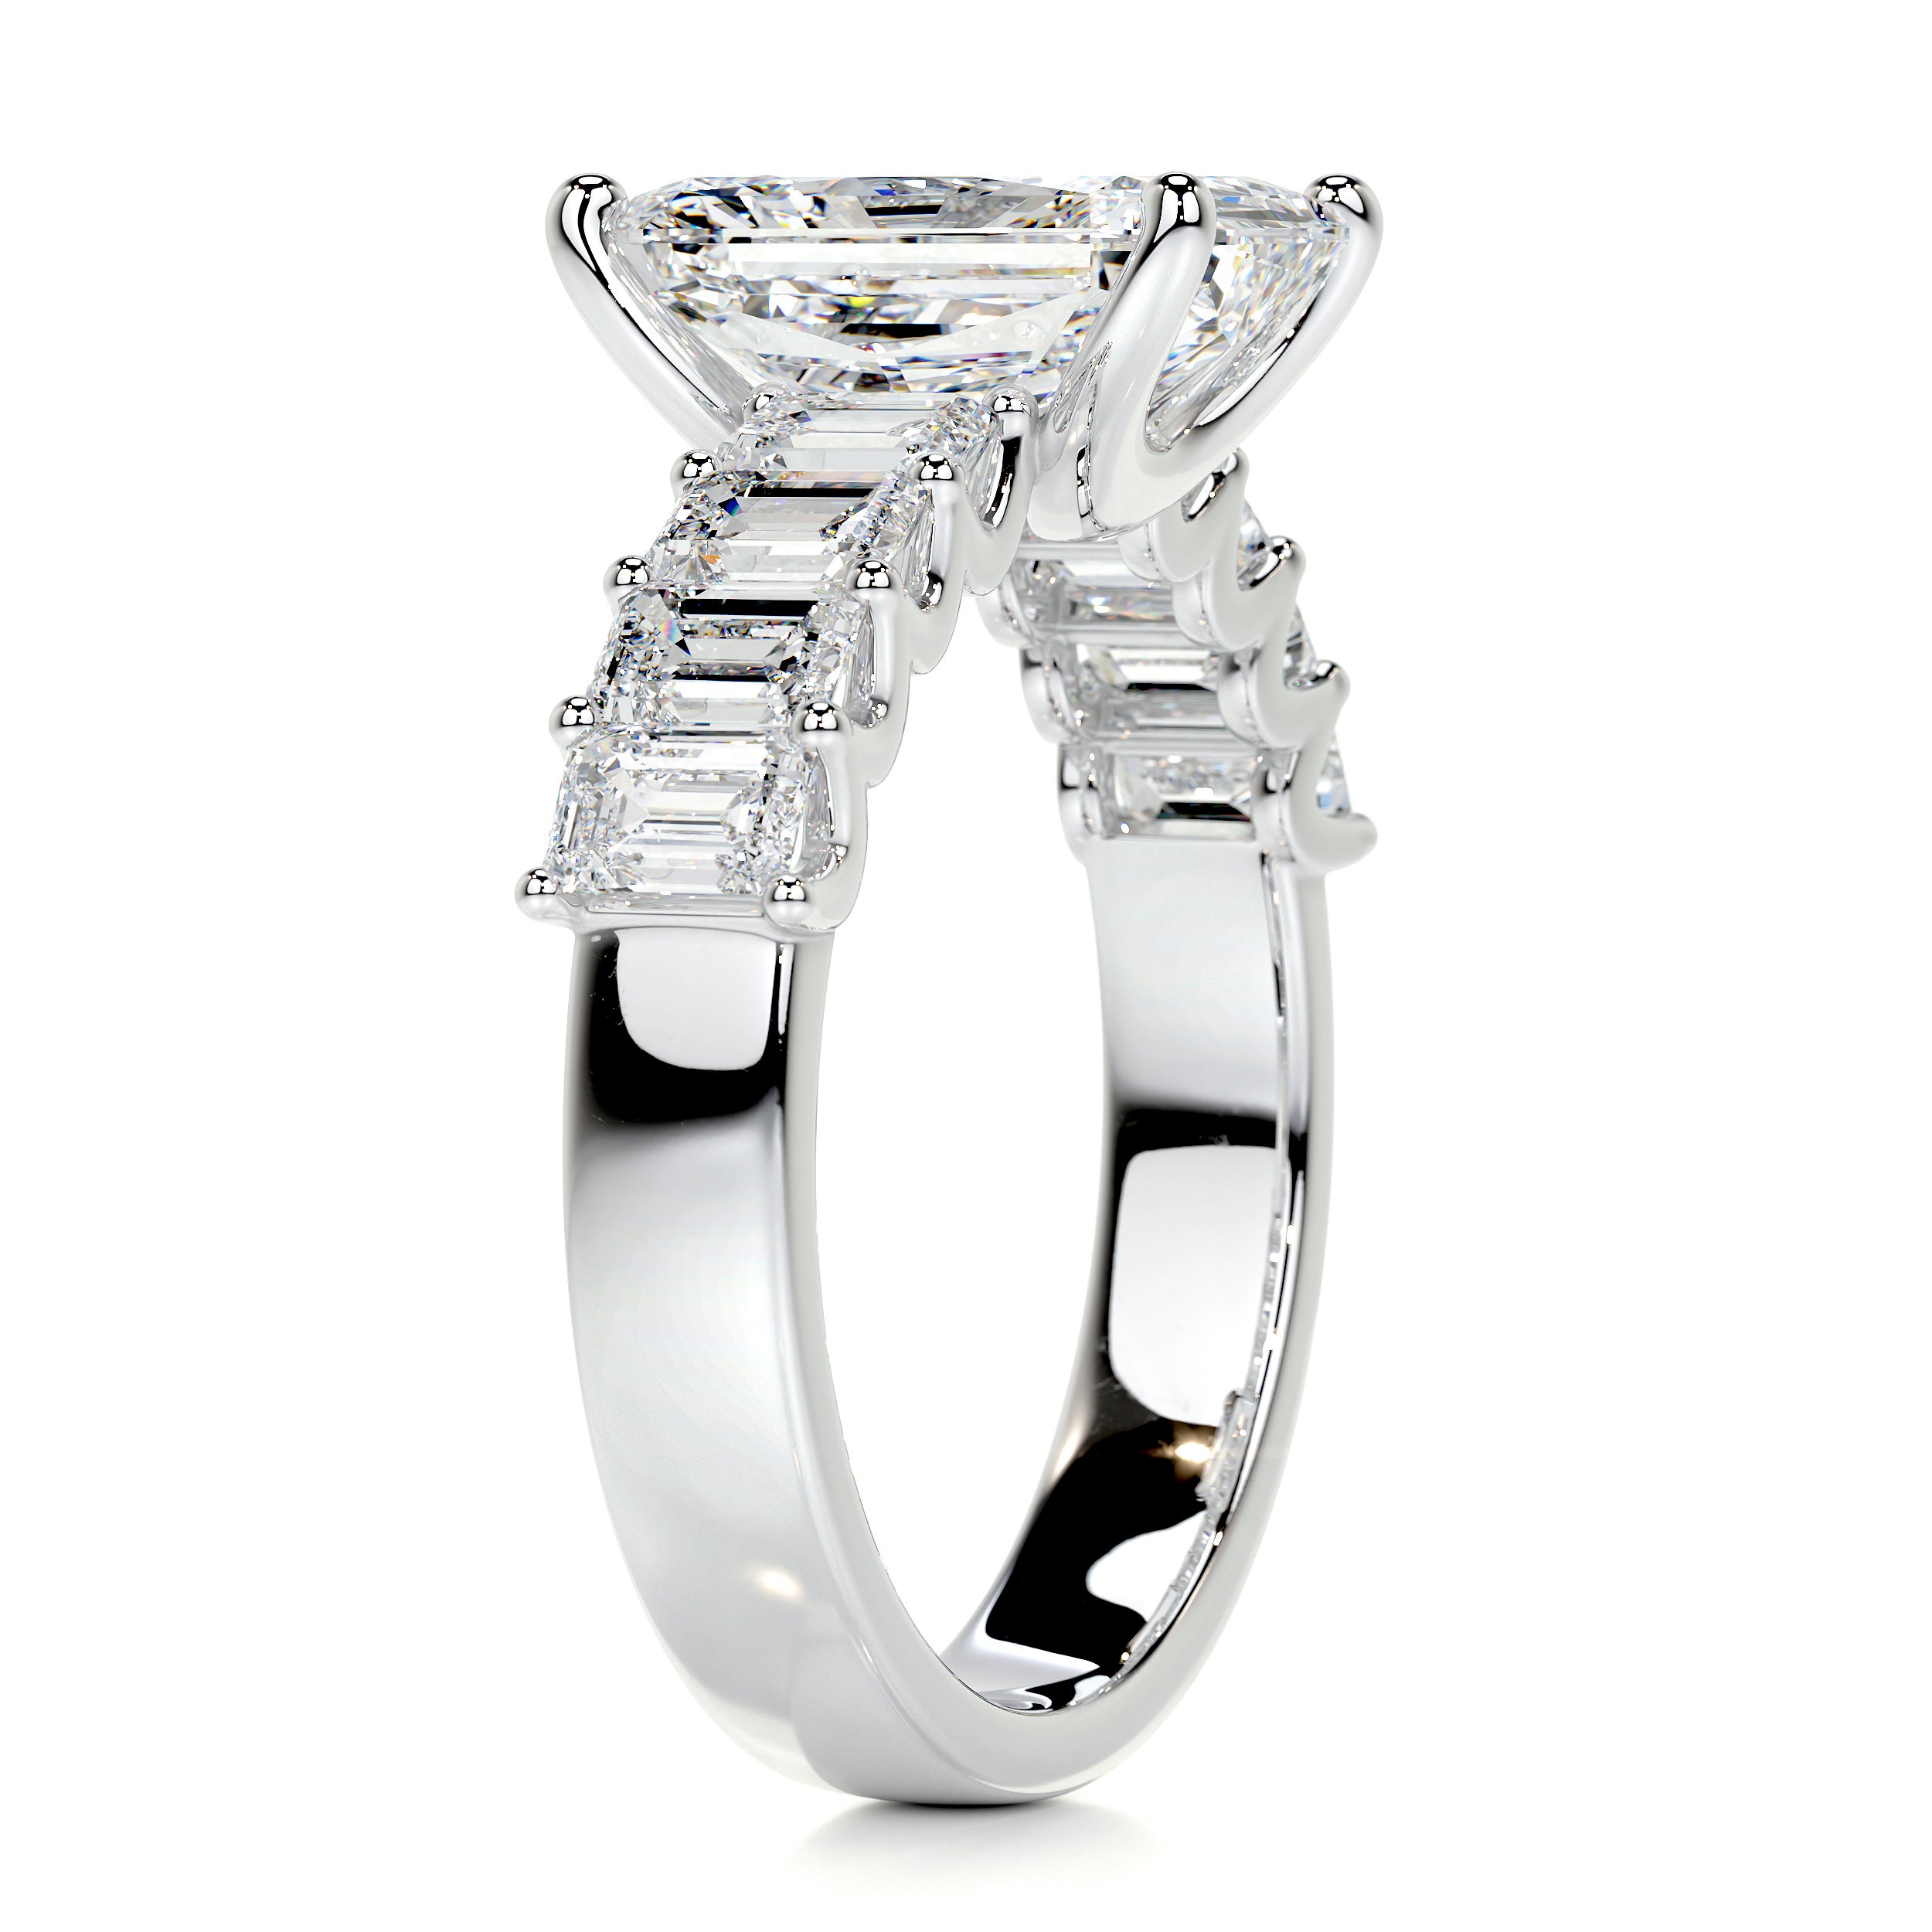 Arabella Diamond Engagement Ring   (5 Carat) -Platinum